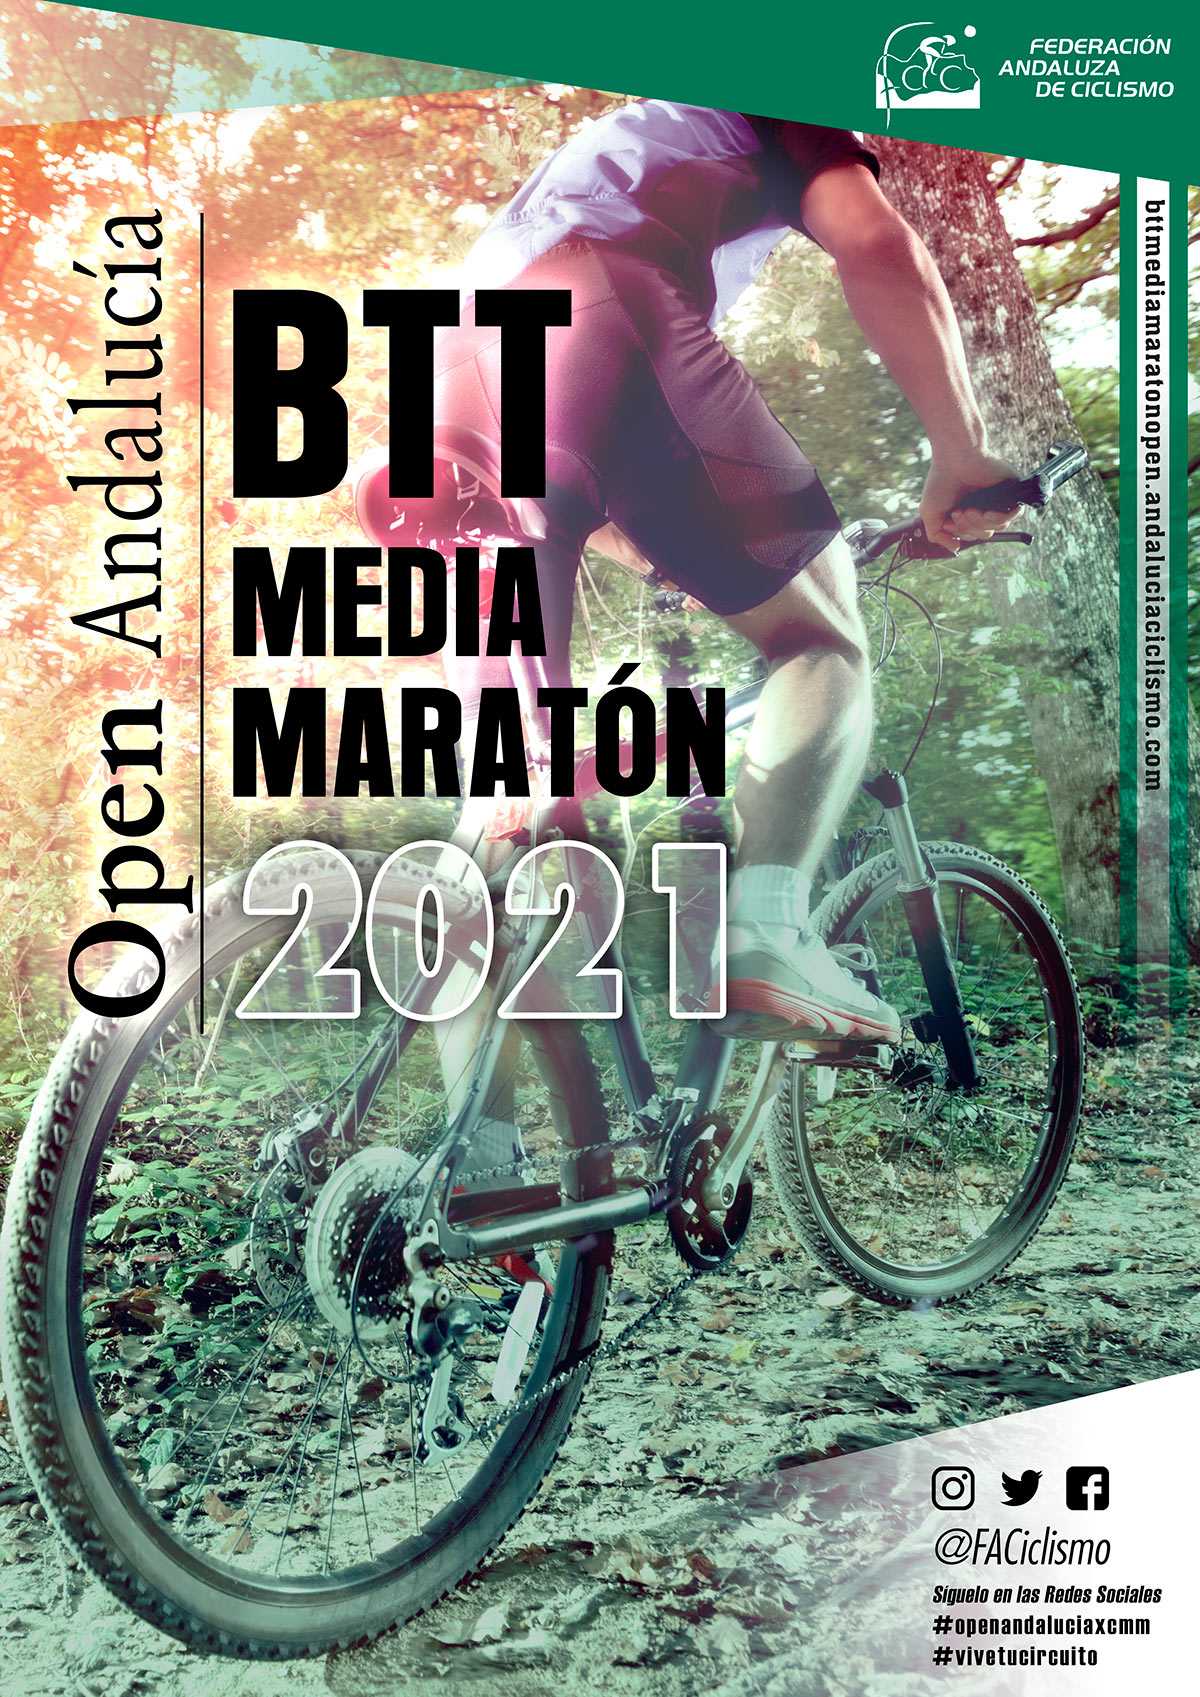 Lubrín cerrará un apasionante Open Andalucía BTT Media Maratón 2021